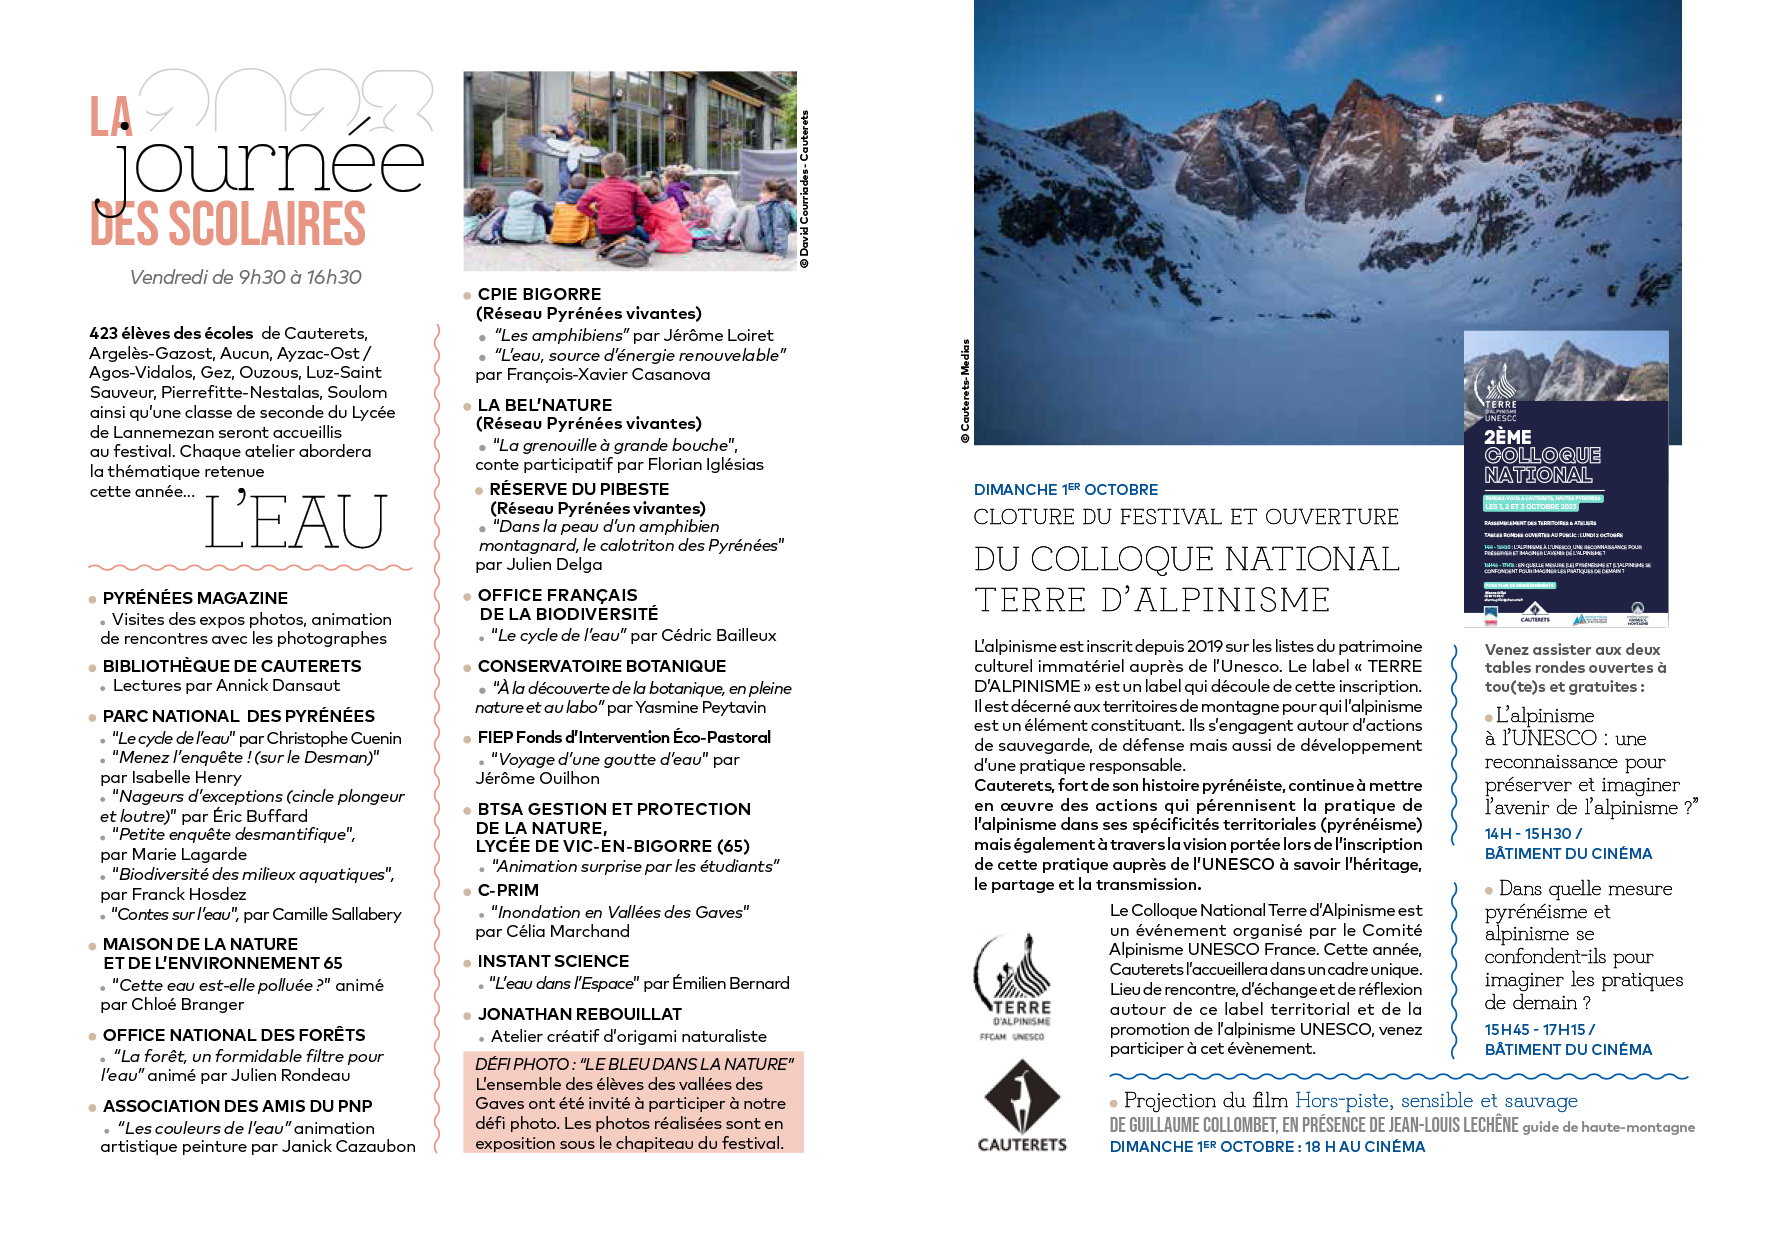 FPIN 2023 - Journée des Scolaires & Colloque National Terre d'Alpinisme